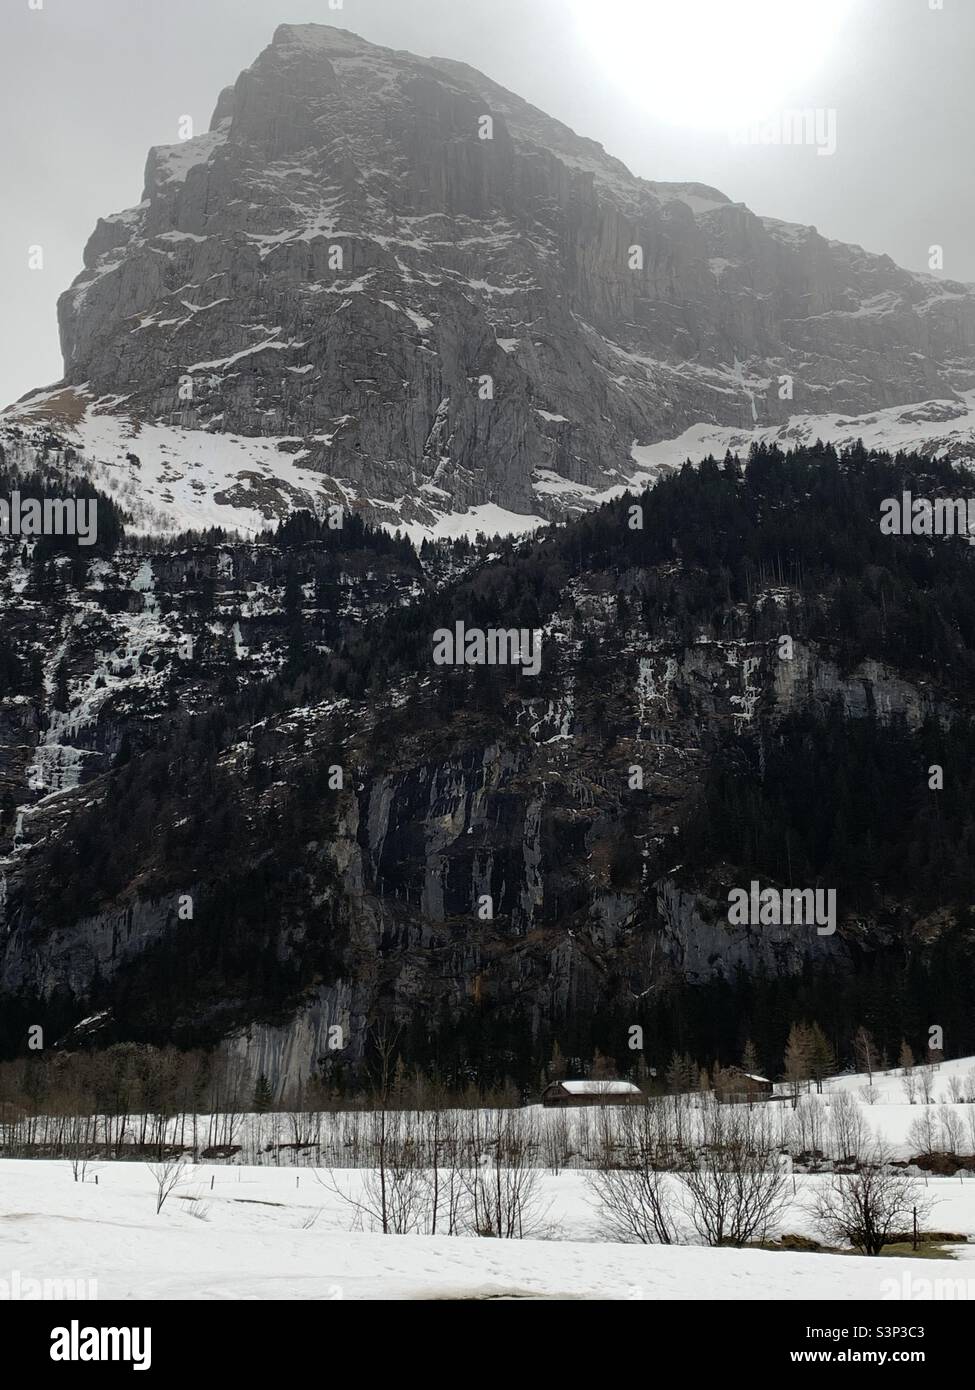 Montagna che mostra alberi e neve con un edificio alla base. Il lato ombreggiato del Monte Titlis in Engelberg, Svizzera. Foto Stock